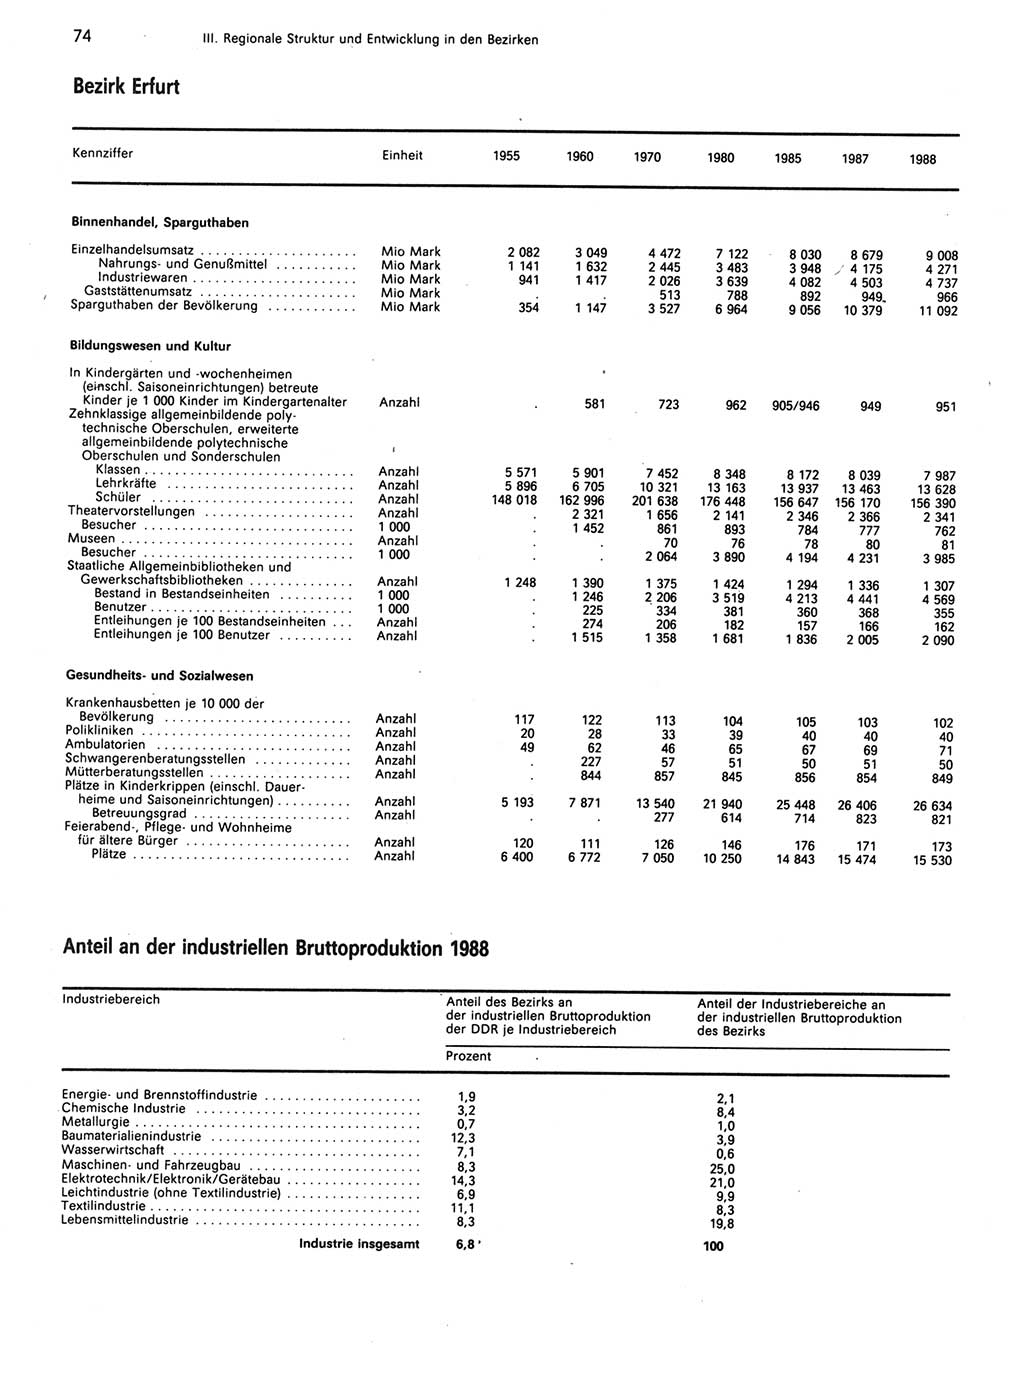 Statistisches Jahrbuch der Deutschen Demokratischen Republik (DDR) 1989, Seite 74 (Stat. Jb. DDR 1989, S. 74)